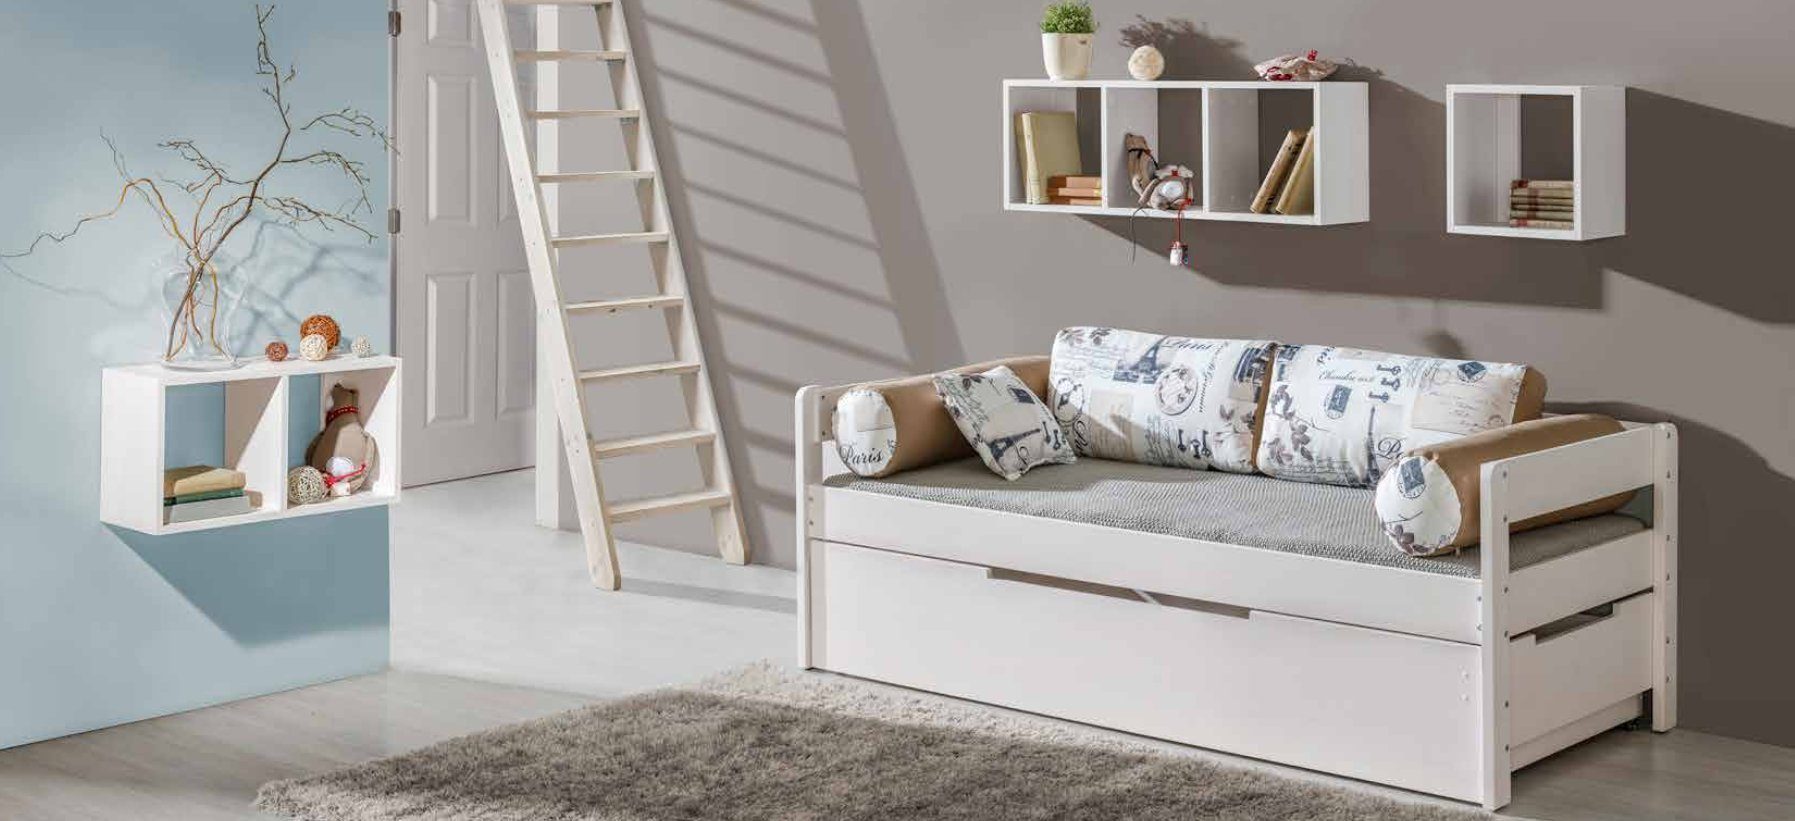 JVmoebel Kinderbett, Kinderzimmer Sofa Couch Holz Bett Schlaf Couchen Betten